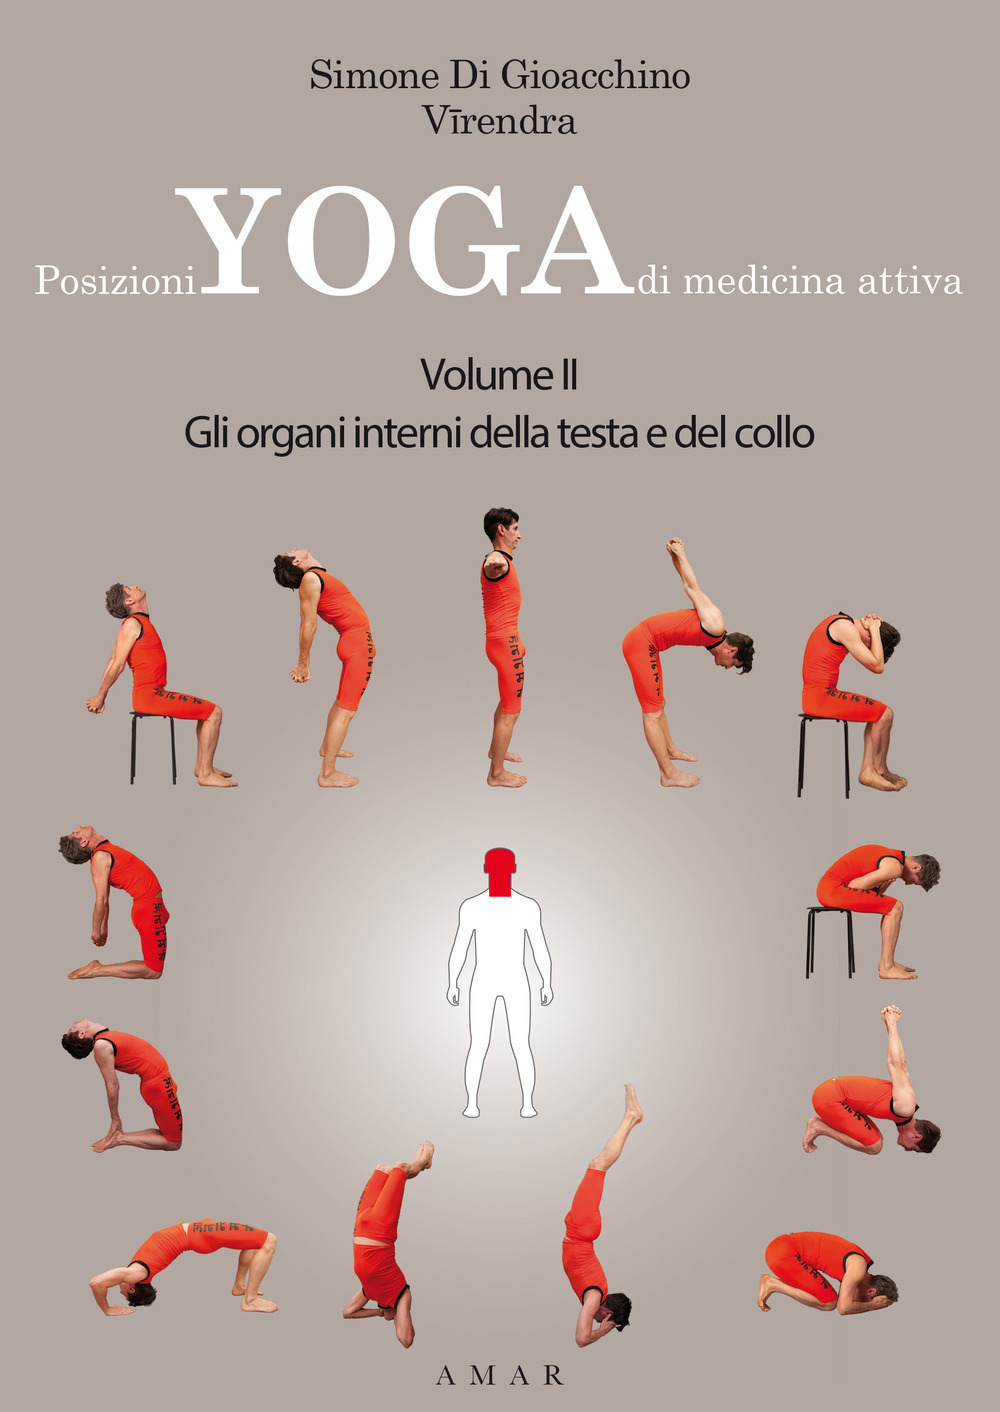 Image of Posizioni yoga di medicina attiva. Vol. 2: organi interni della testa e del collo, Gli.